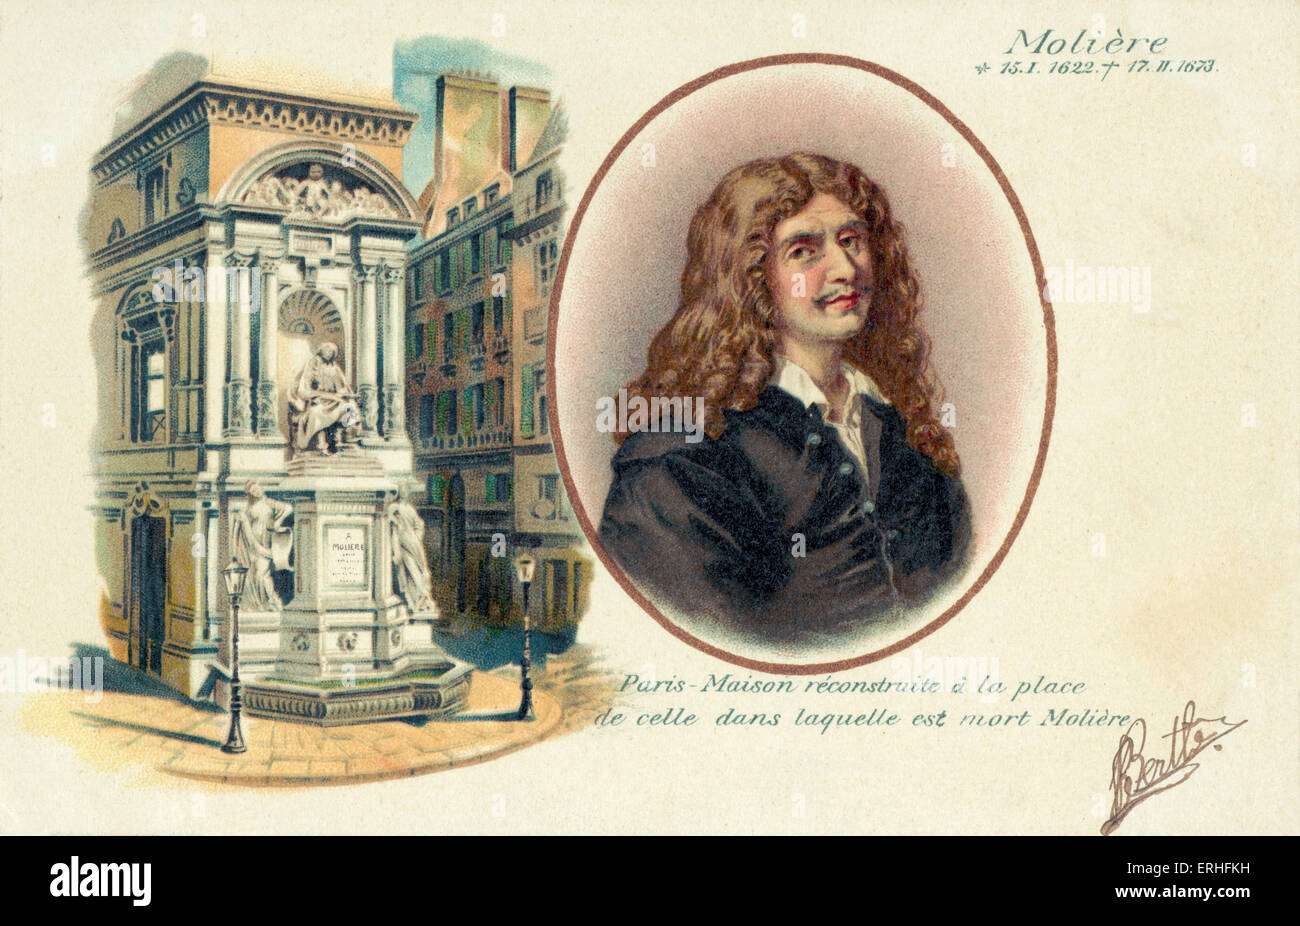 Moliere (de son vrai nom Jan-Baptiste Poquelin) - portrait avec illustration de monument dédié à lui - dramaturge français, la bande dessinée Banque D'Images